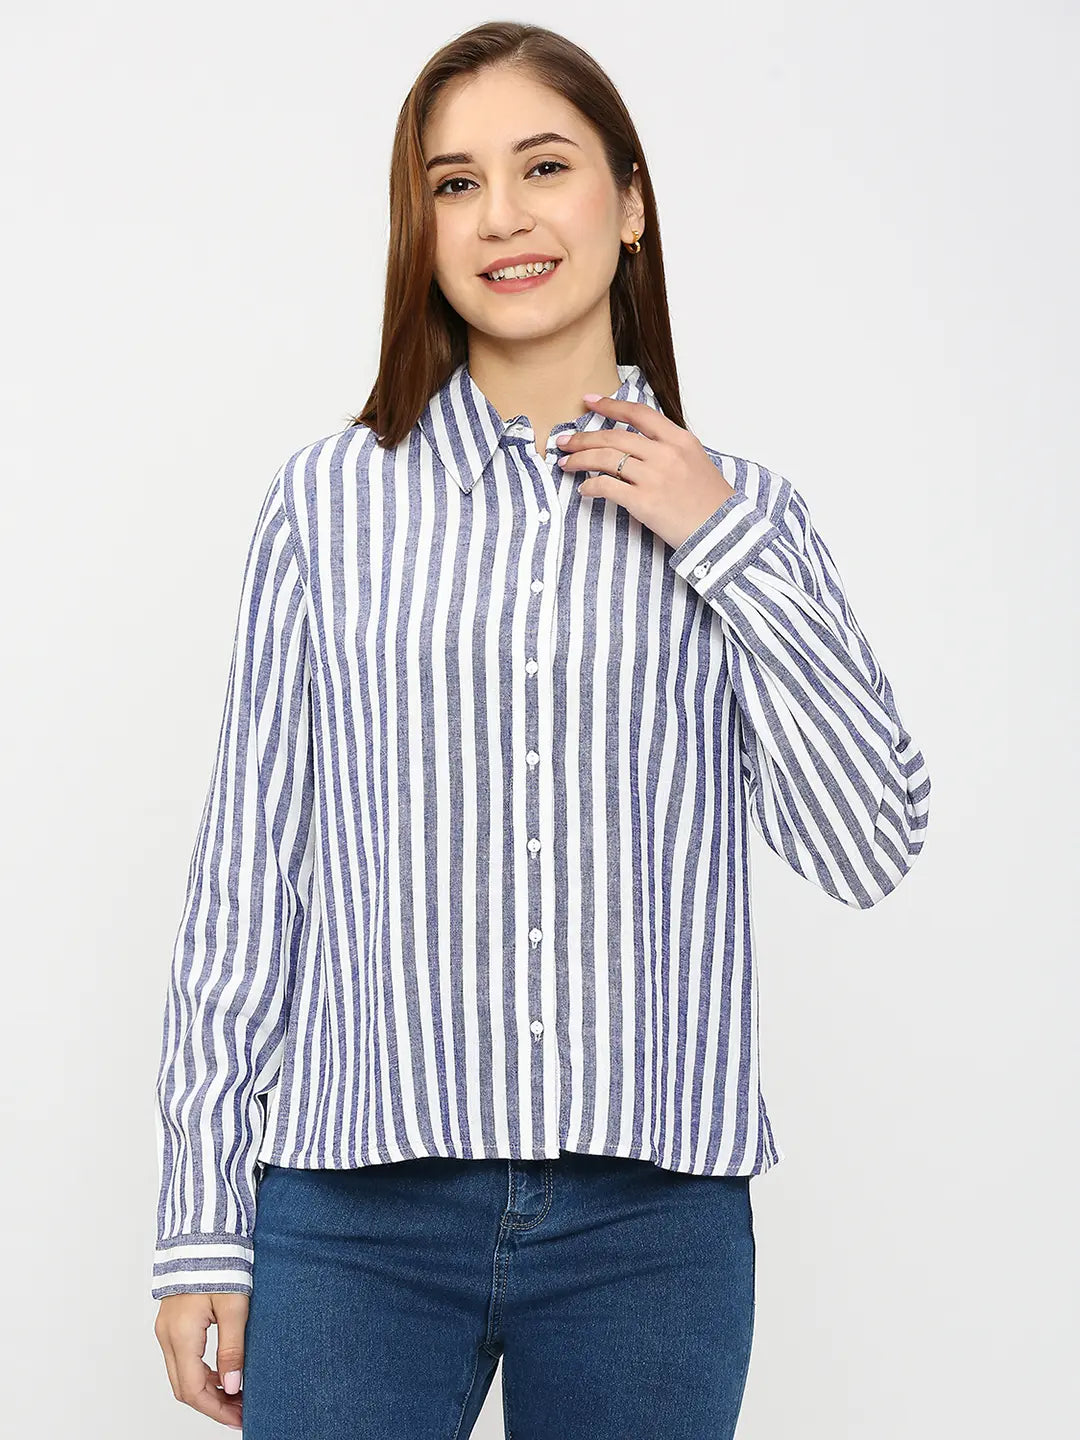 Spykar Women Blue Cotton Regular Fit Striped Shirts